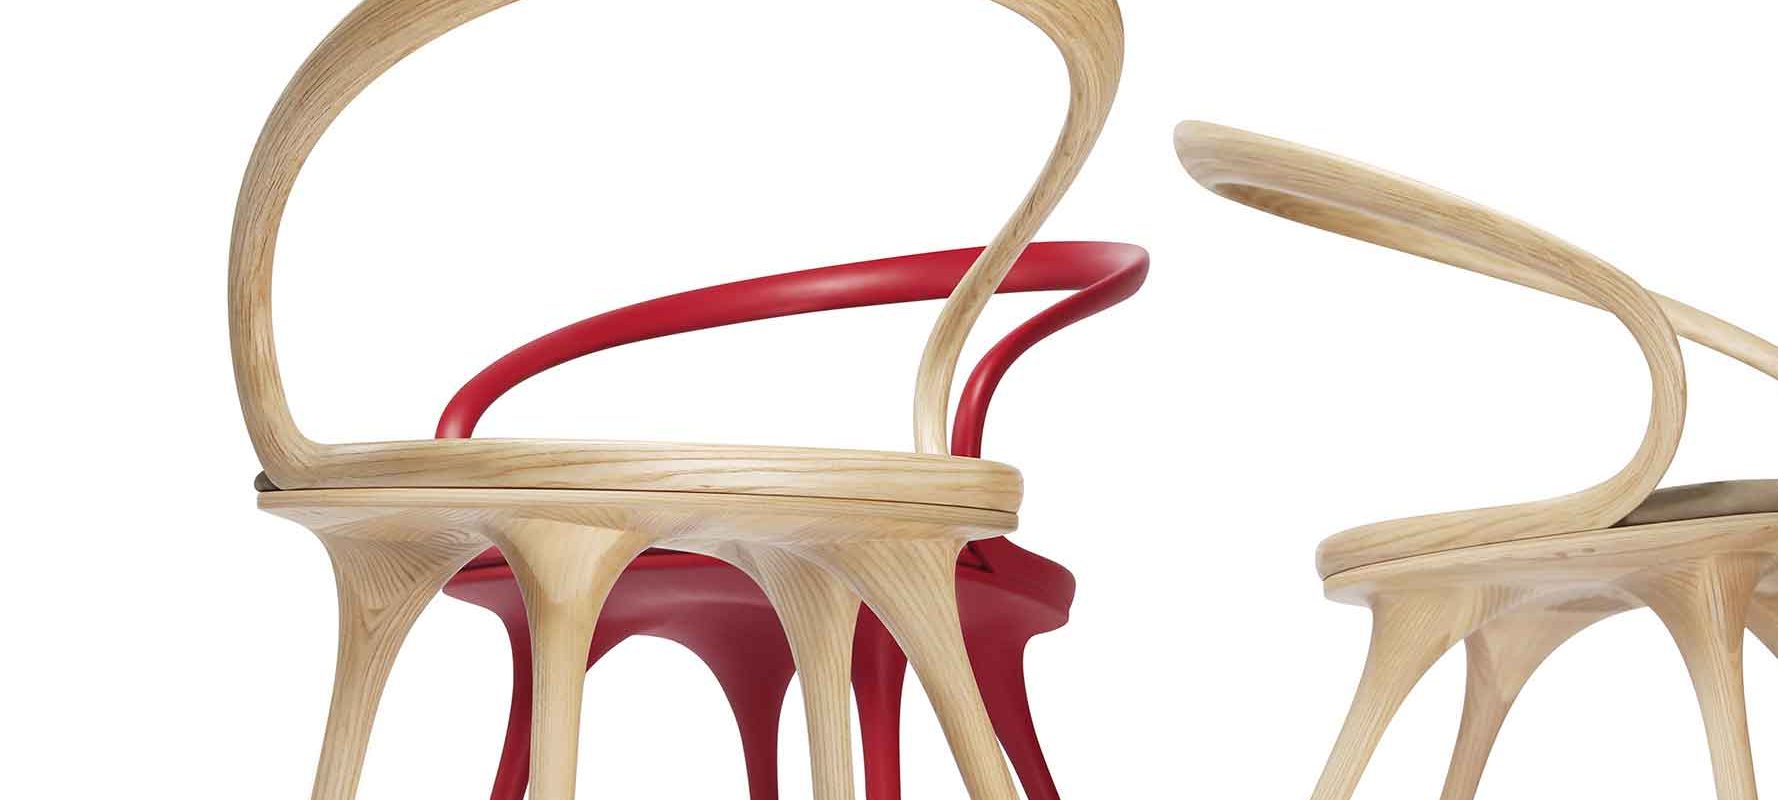 Prideer Chair, SDE, Design Shanghai 2021